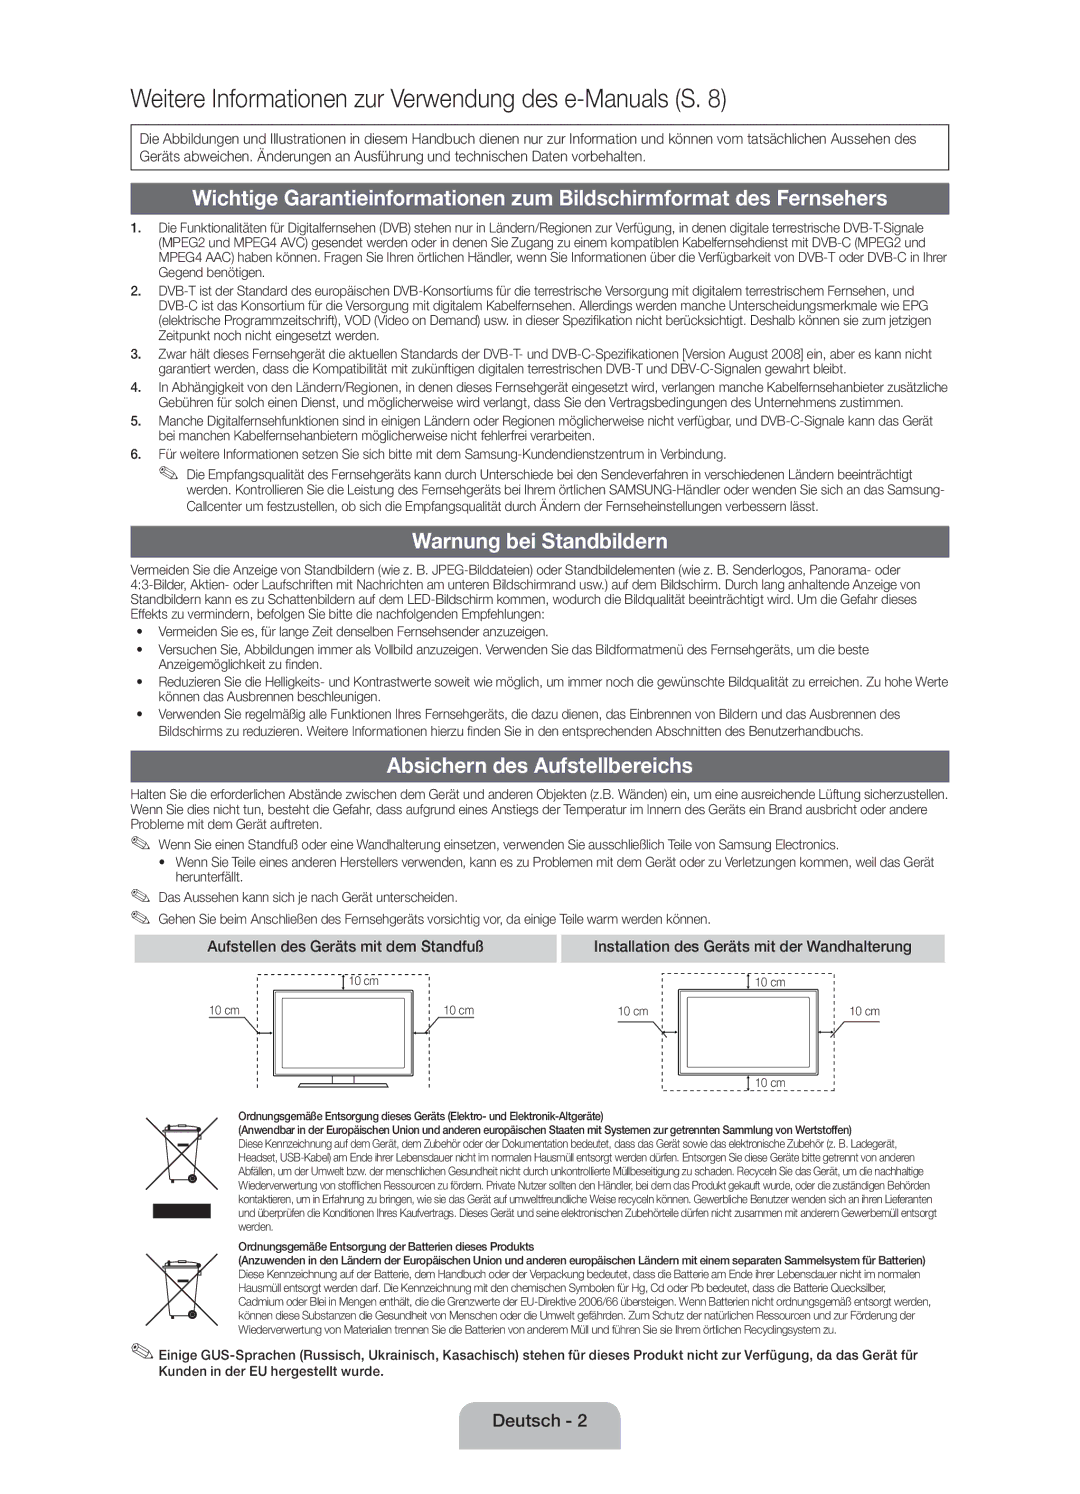 Samsung UE19ES4000WXZF manual Warnung bei Standbildern, Absichern des Aufstellbereichs 